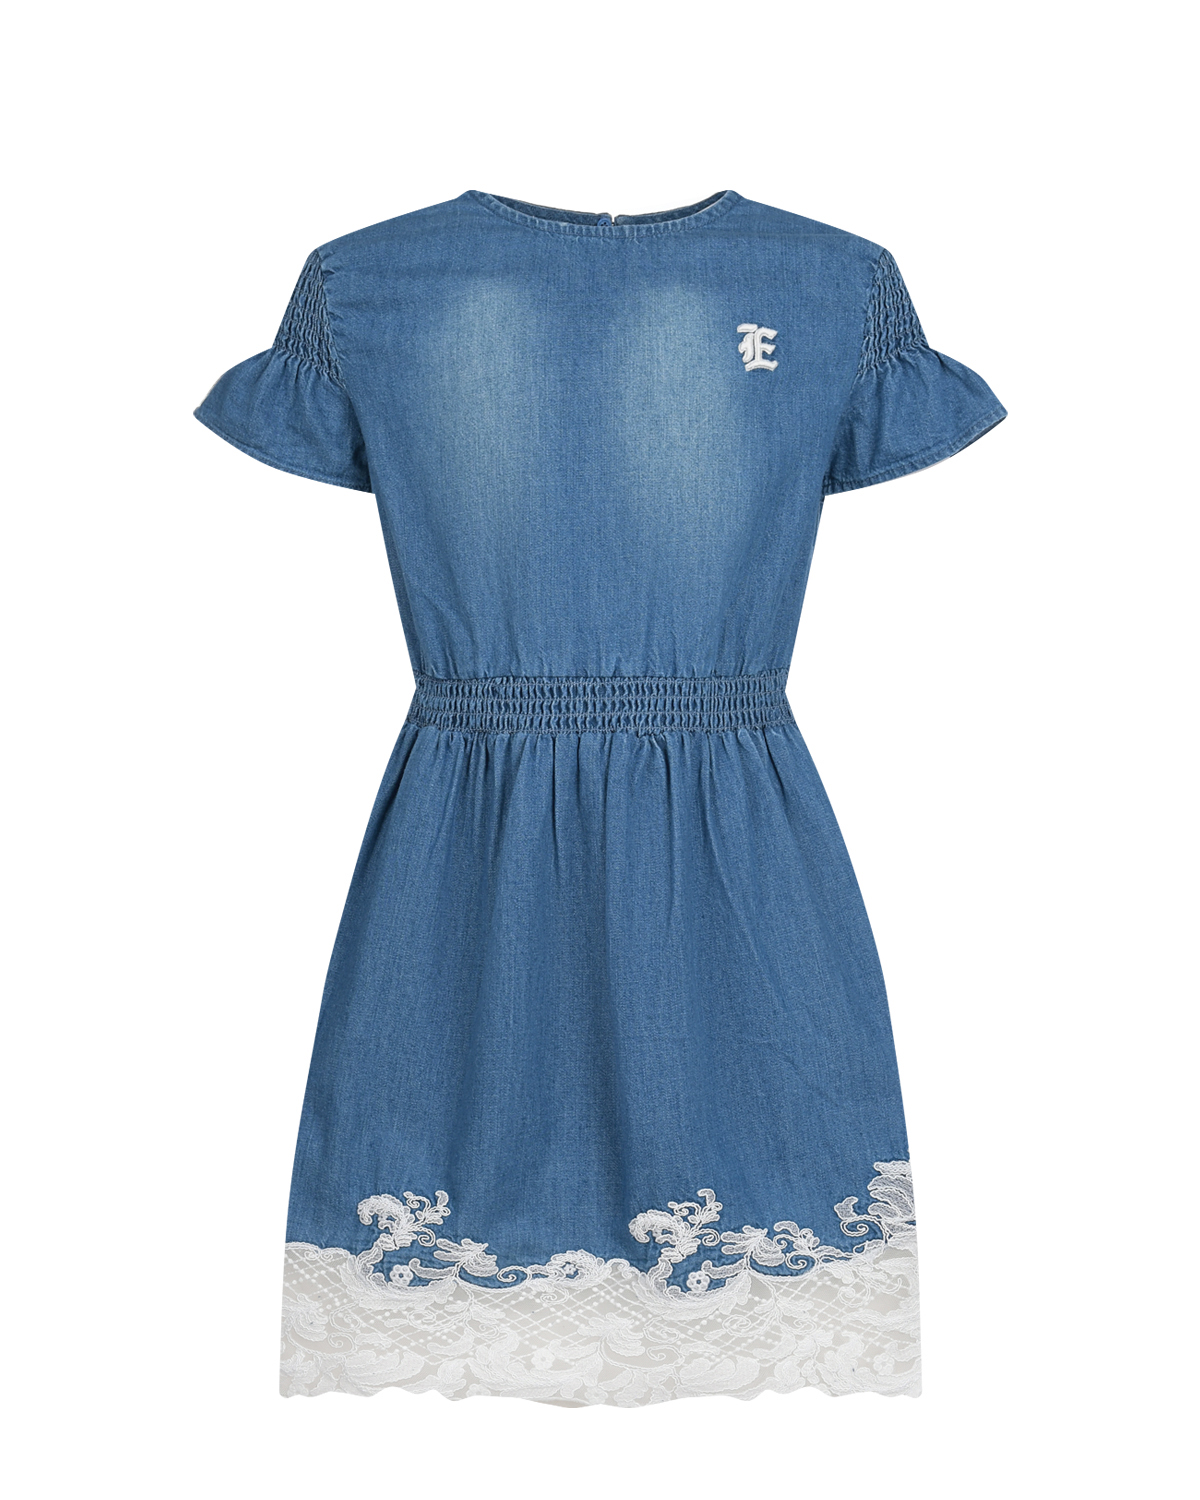 Джинсовое платье с ажурной вышивкой Ermanno Scervino, размер 164, цвет синий - фото 1